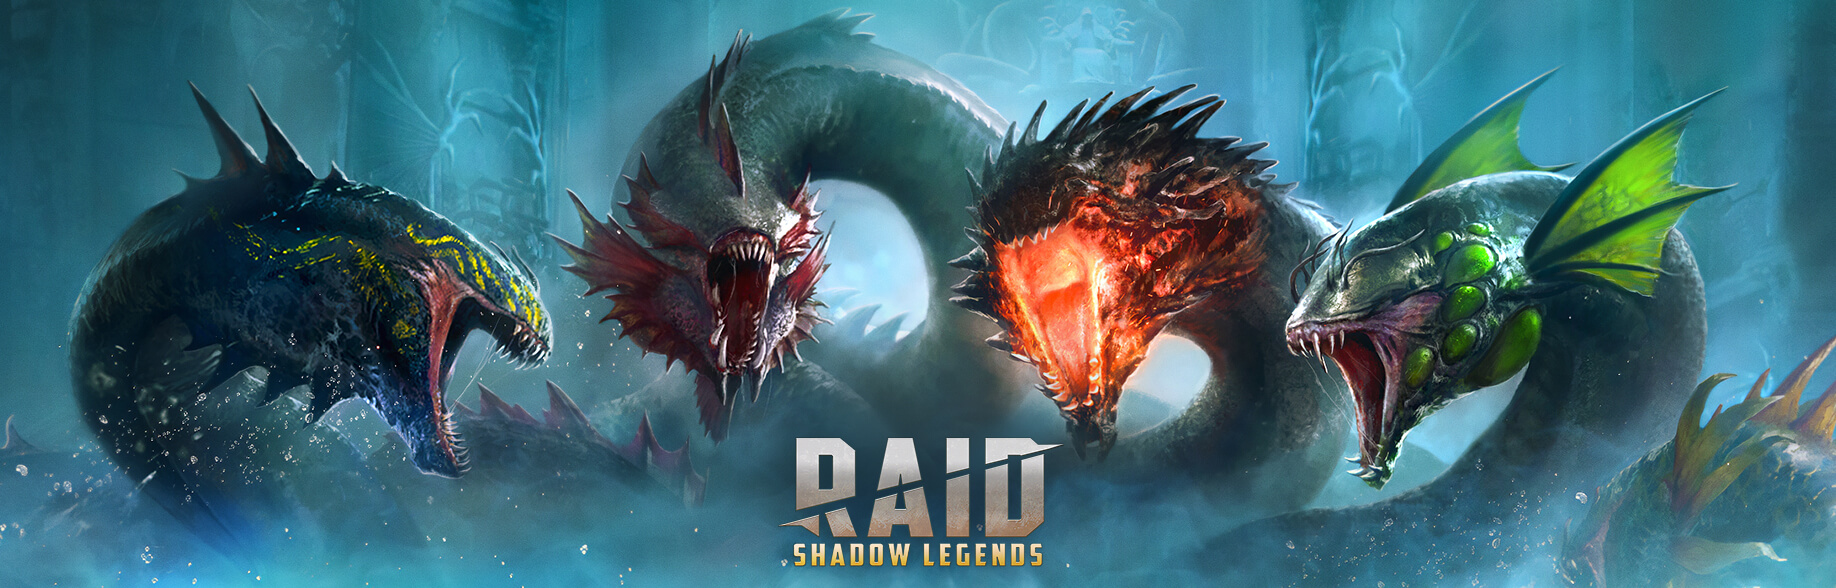 Hydra raid shadow legends